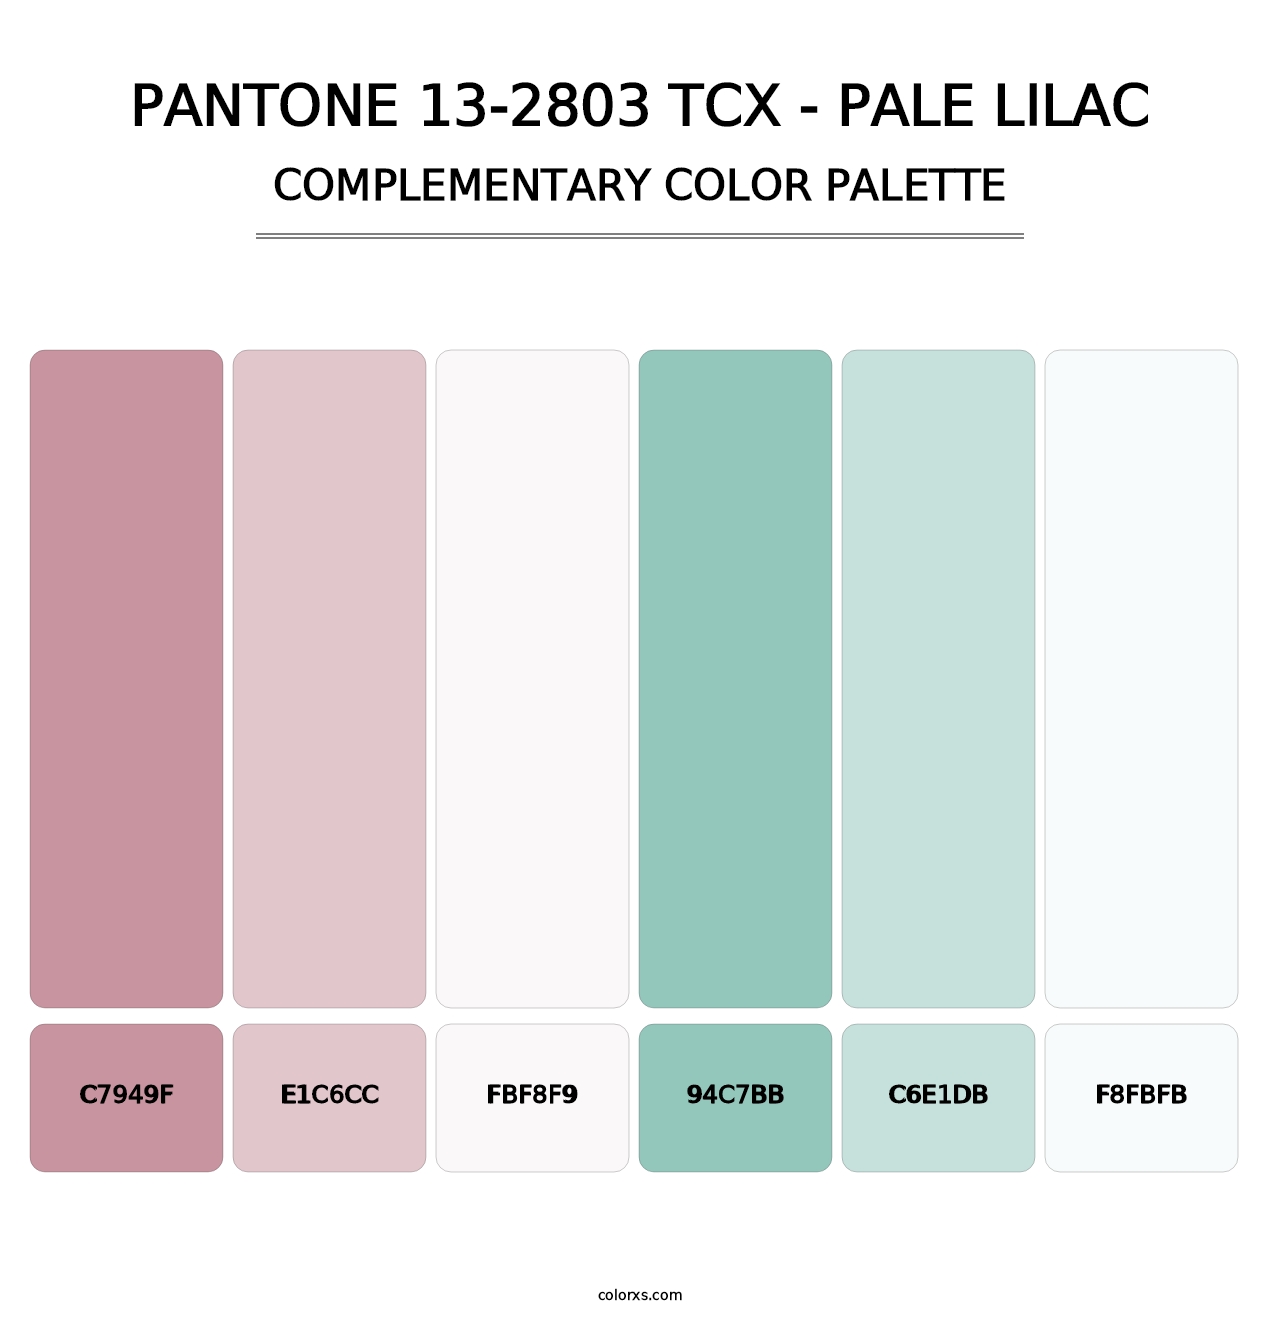 PANTONE 13-2803 TCX - Pale Lilac - Complementary Color Palette